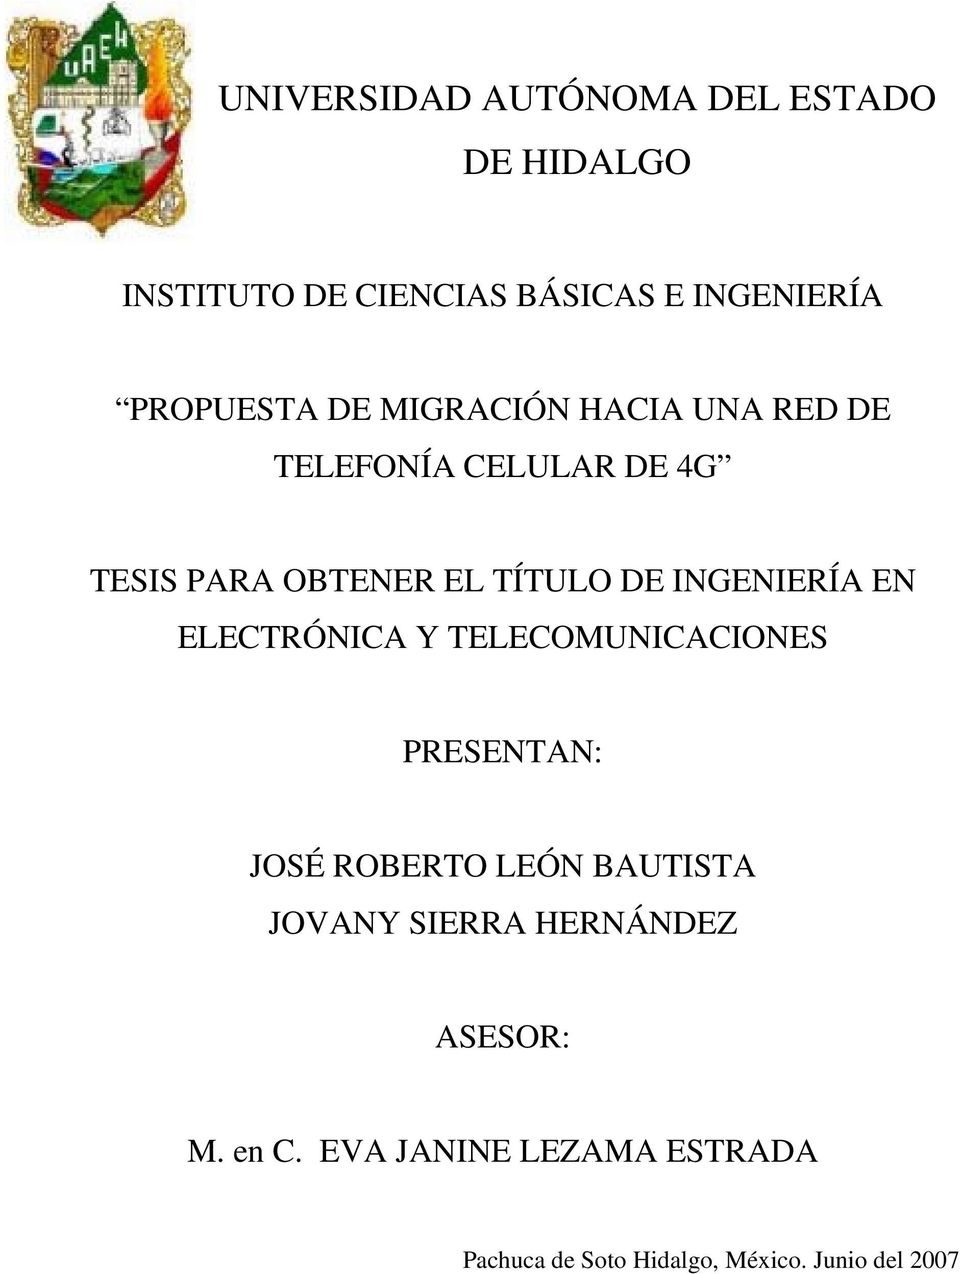 INGENIERÍA EN ELECTRÓNICA Y TELECOMUNICACIONES PRESENTAN: JOSÉ ROBERTO LEÓN BAUTISTA JOVANY